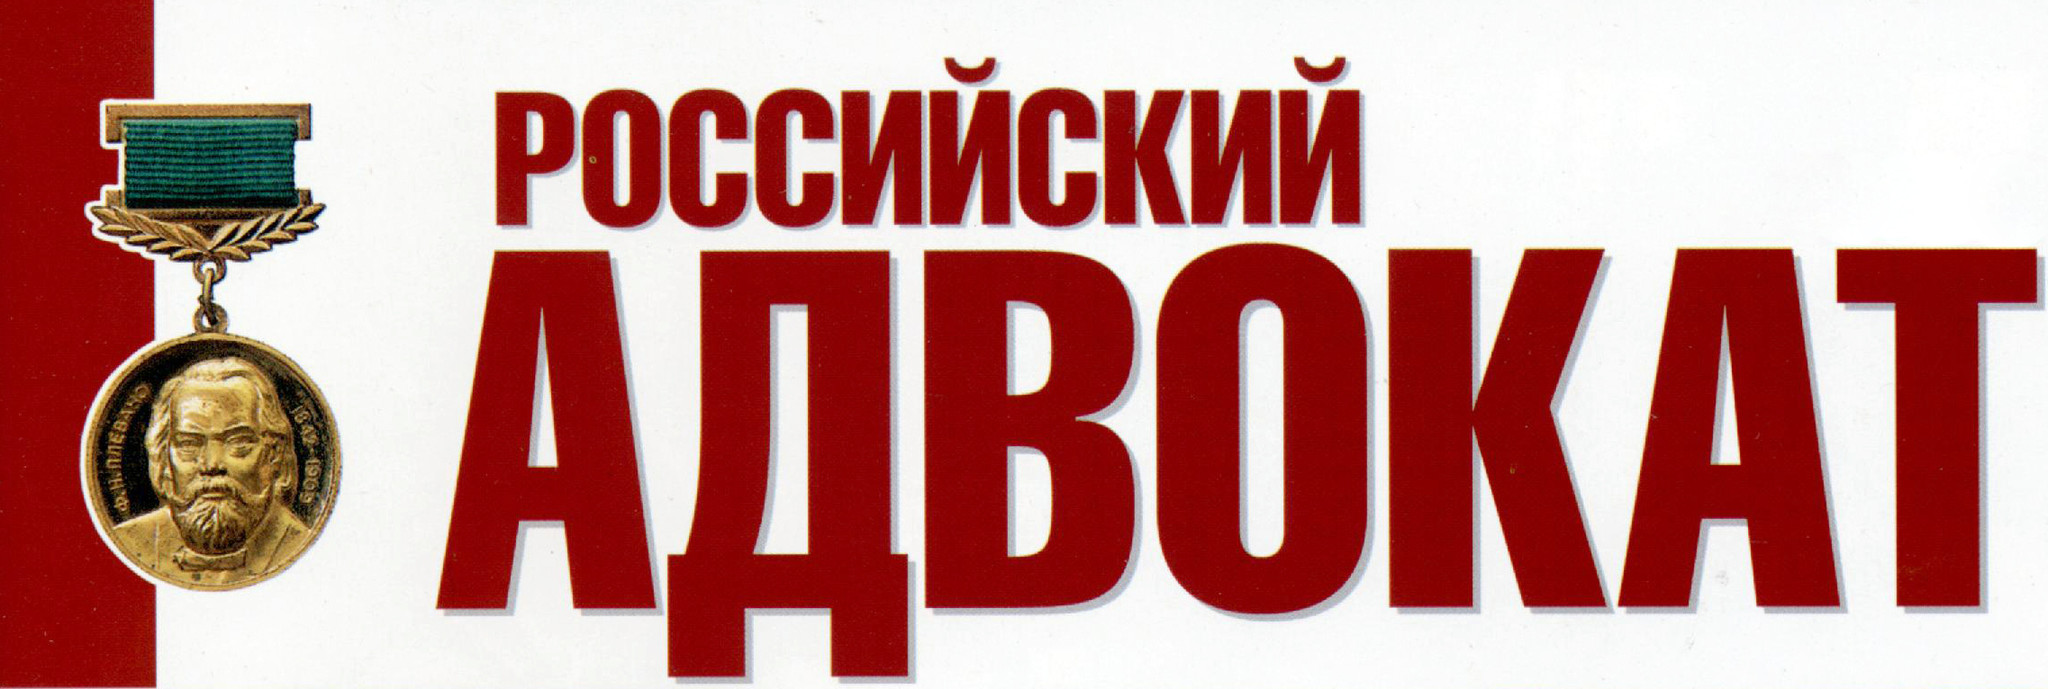 Российская арбитражная Ассоциация логотип